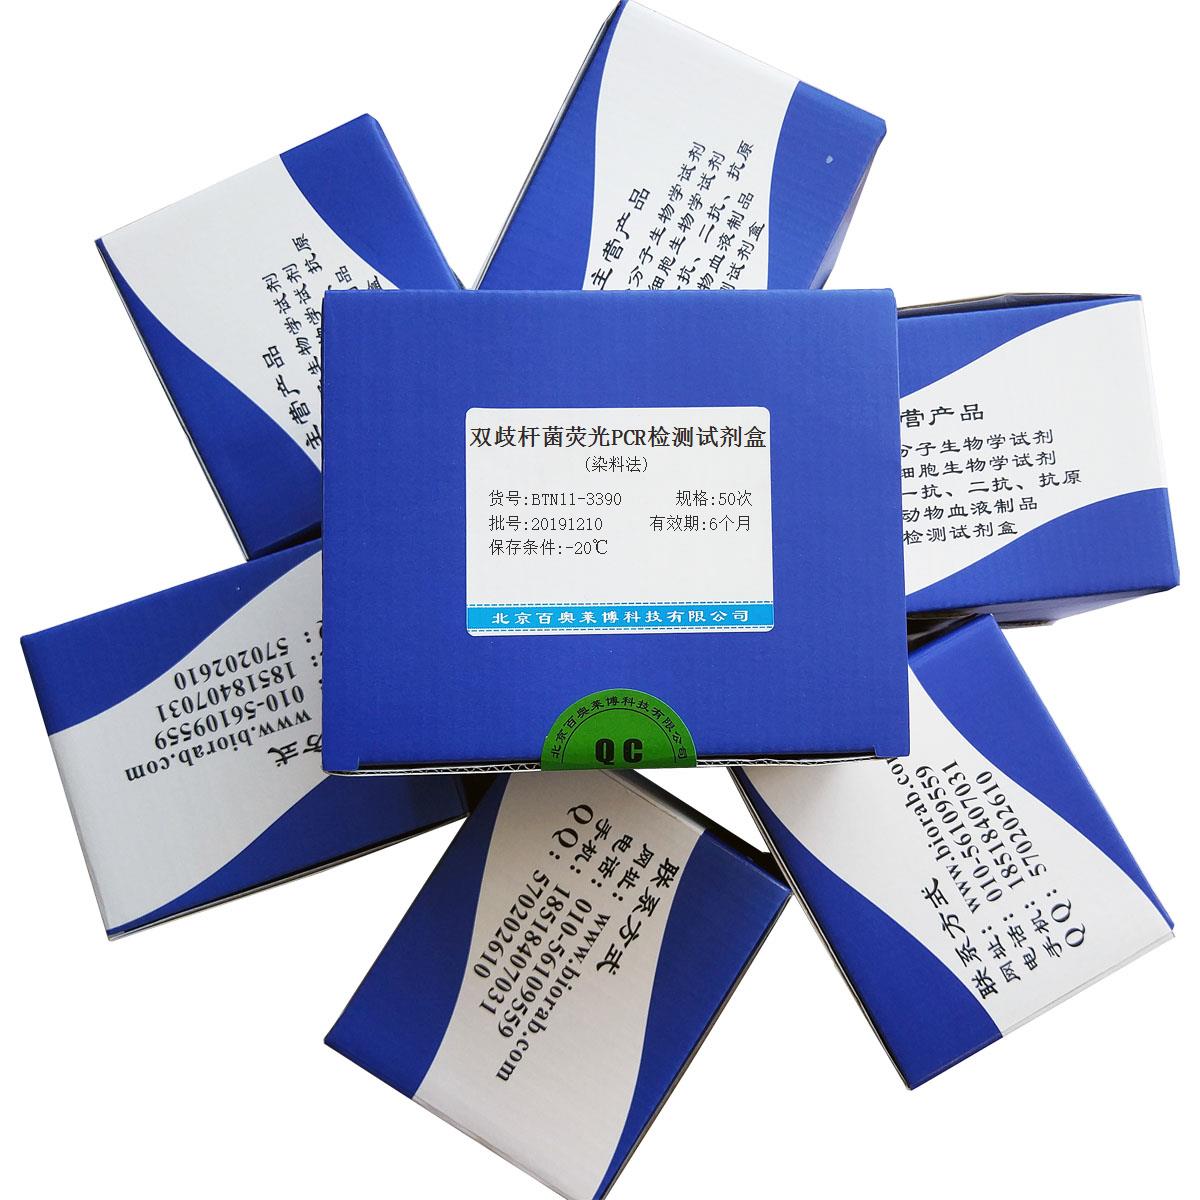 双歧杆菌荧光PCR检测试剂盒(染料法)价格